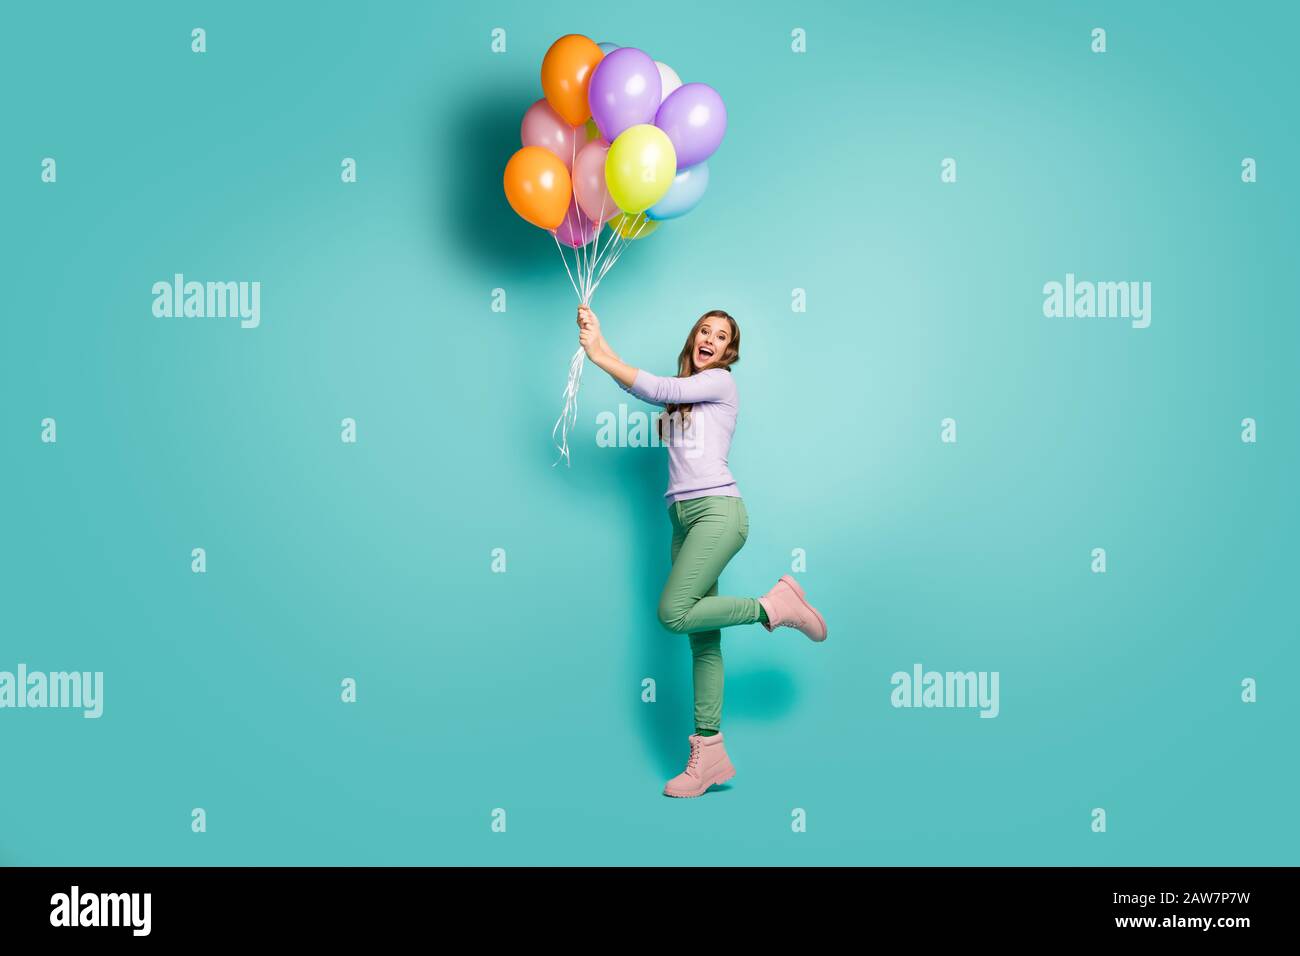 Das Profilfoto der hübschen funky Lady hält viele bunte Luftballons, die mit Wind wehenden, lilakischen Pullover, grünen Hosen, Stiefeln wegfliegen Stockfoto